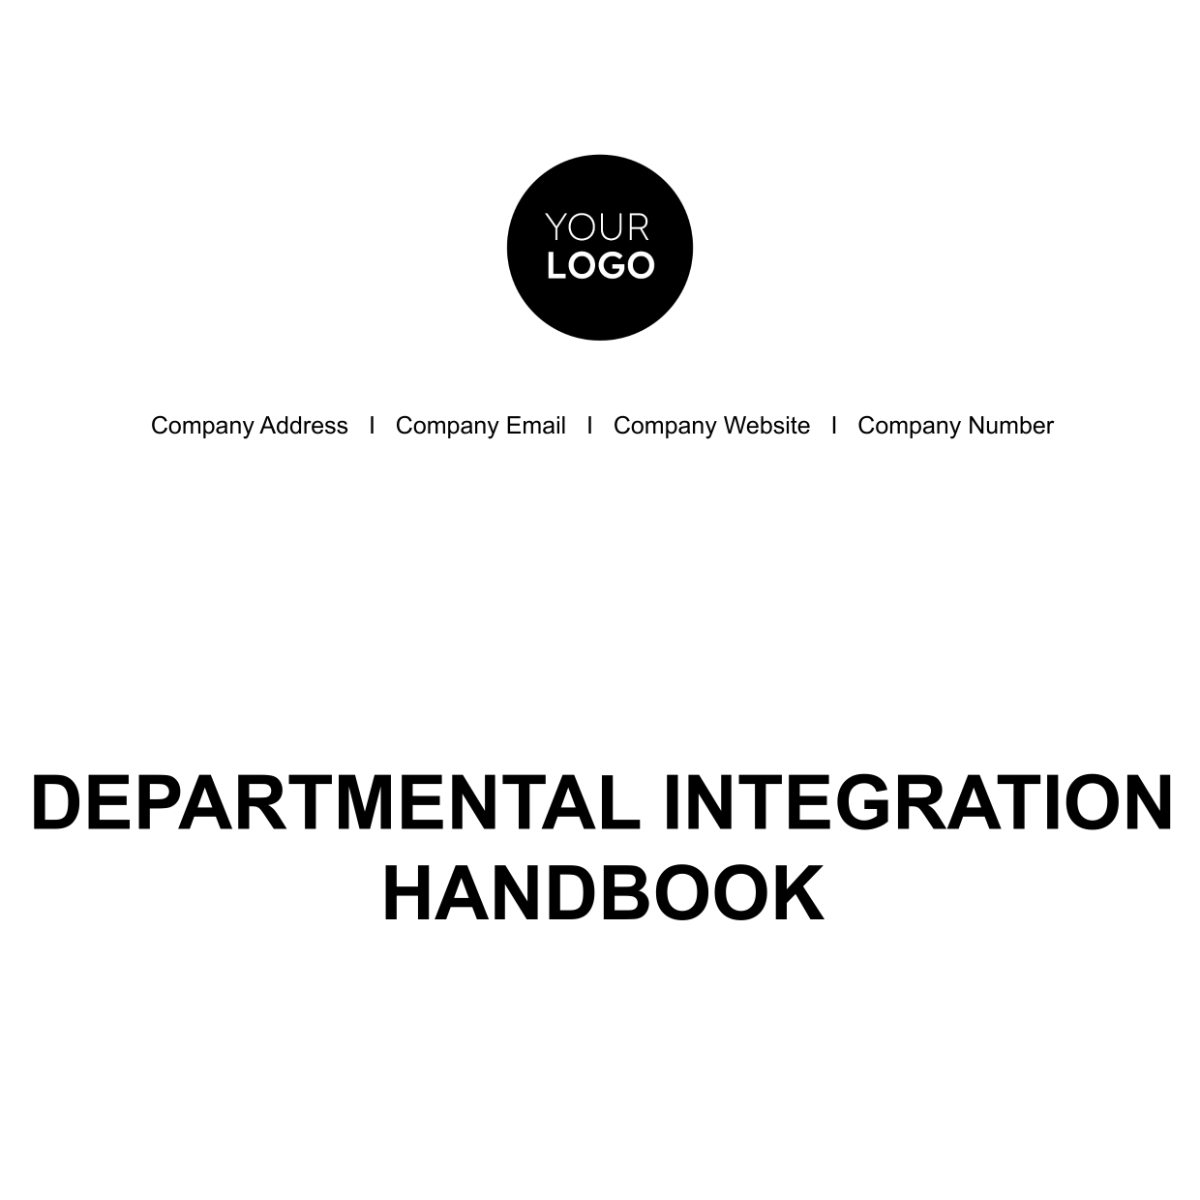 Departmental Integration Handbook HR Template